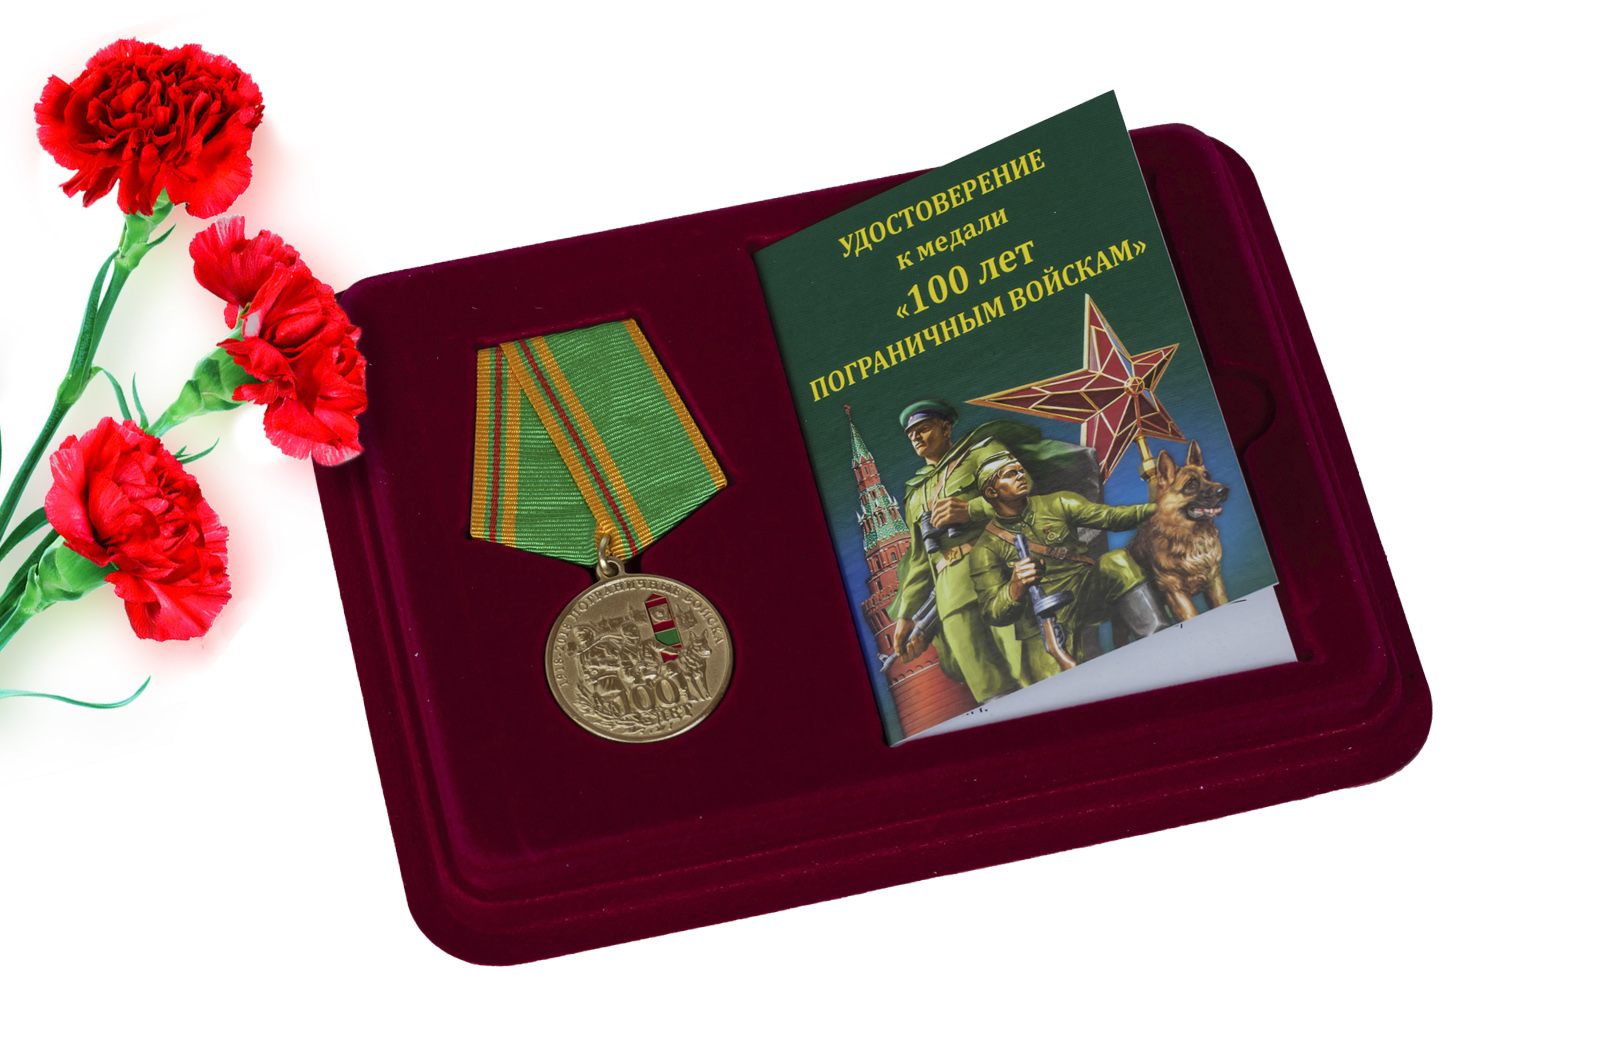 Купить юбилейную медаль 100 лет Погранвойскам оптом или в розницу